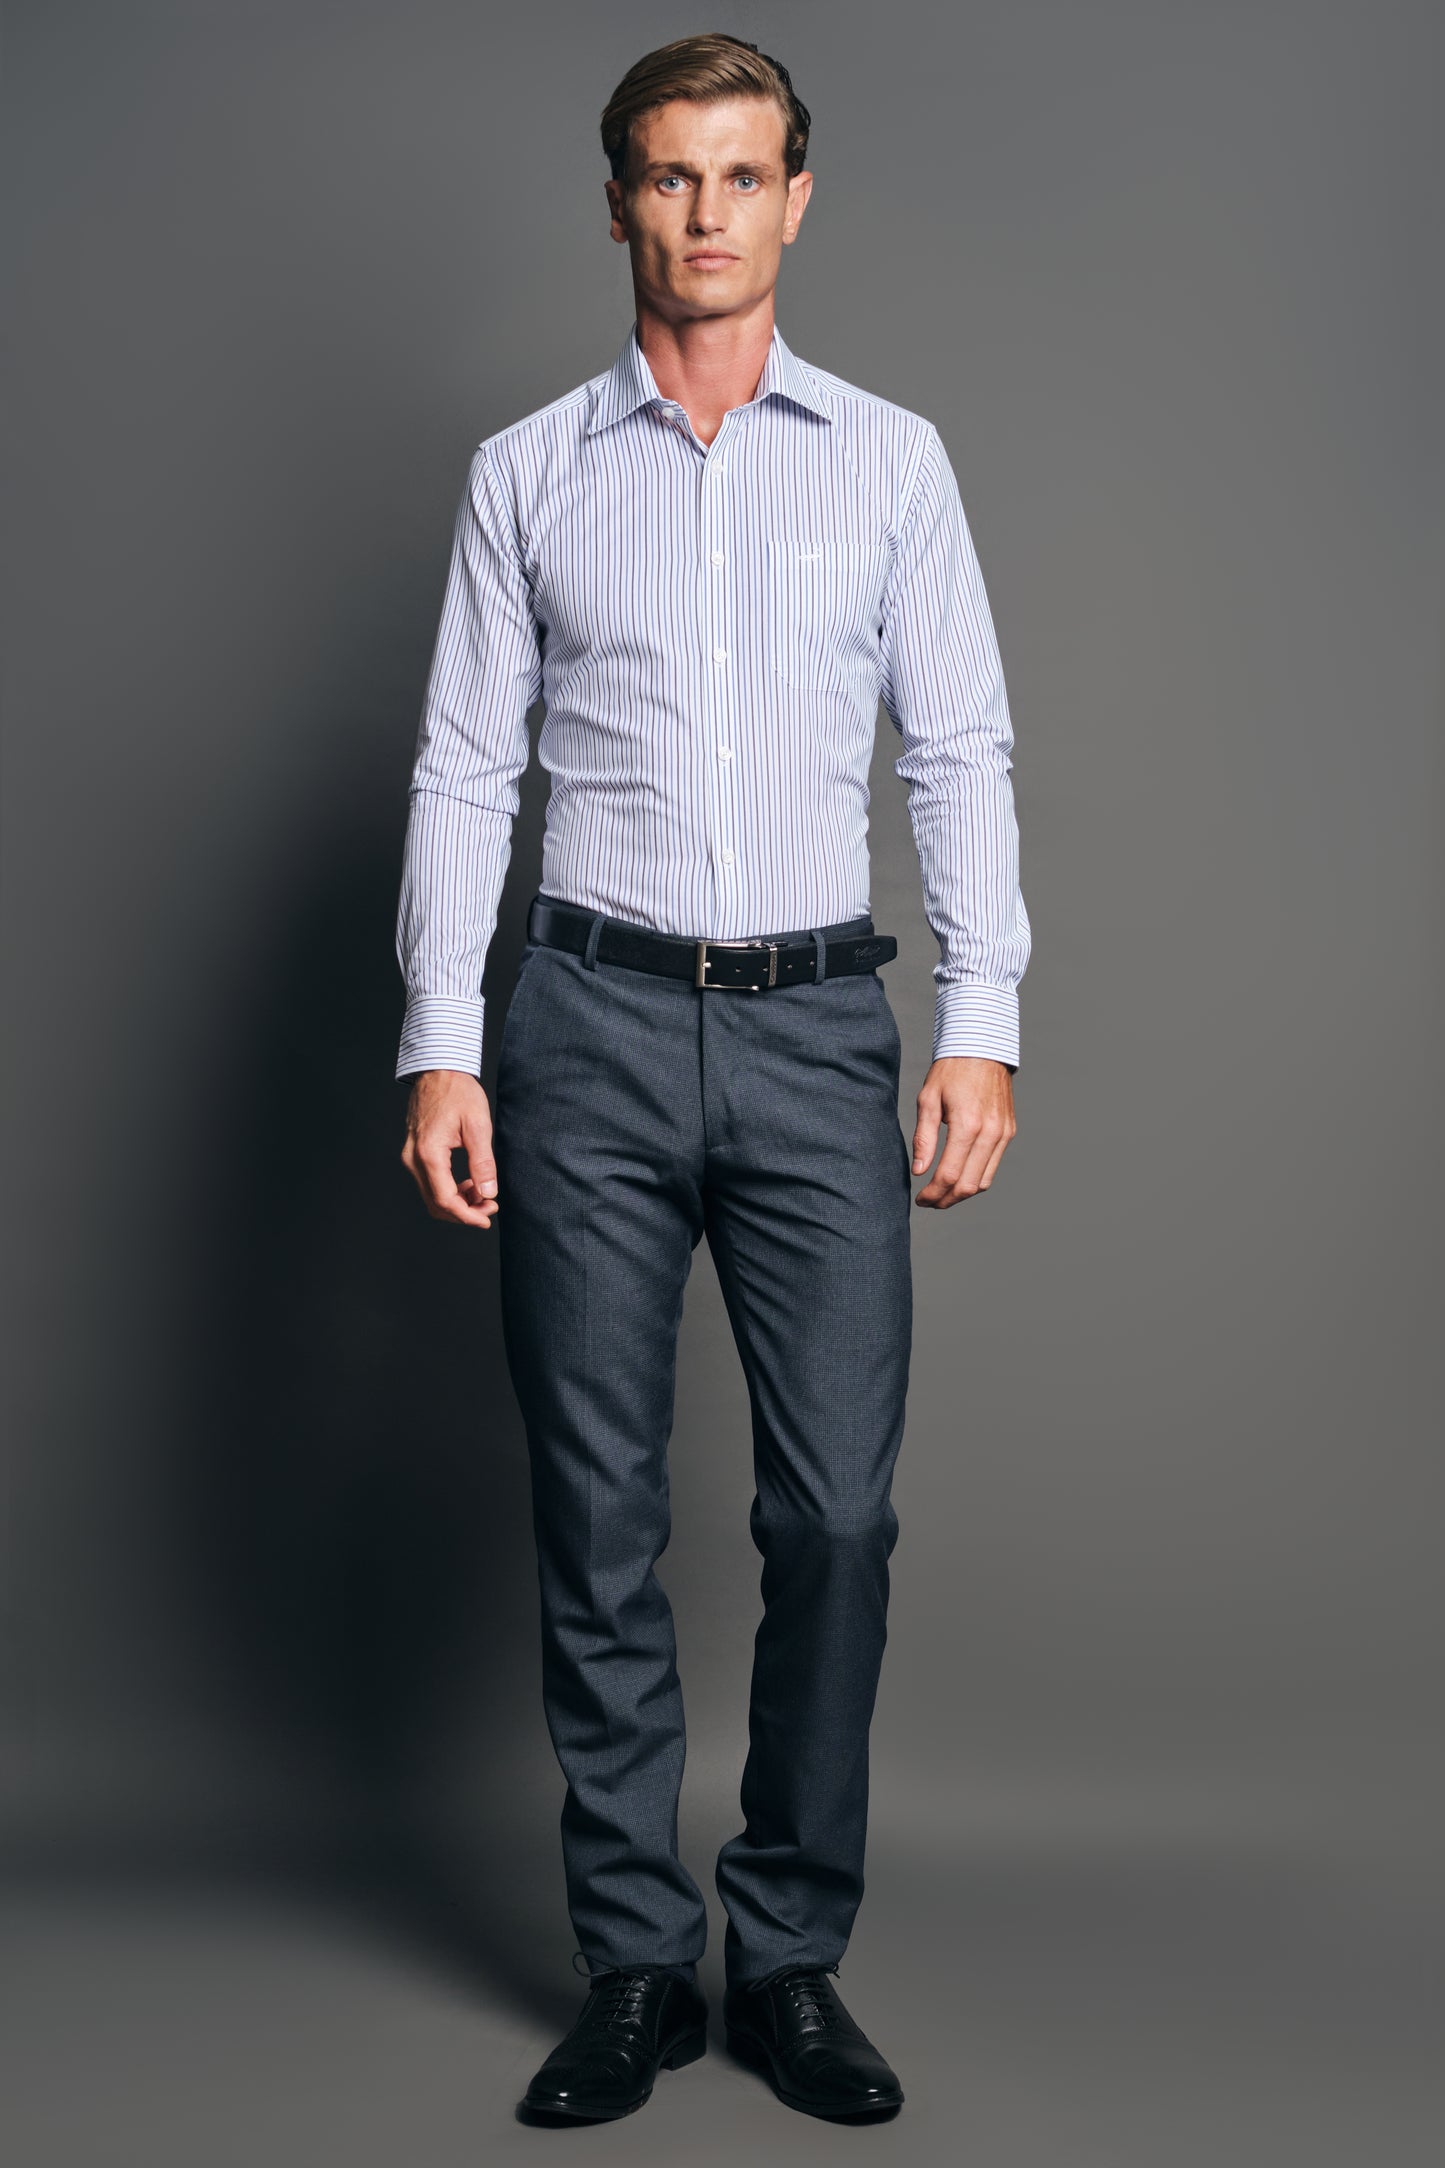 Slim Fit Long sleeves-Formal Shirts-Merlin